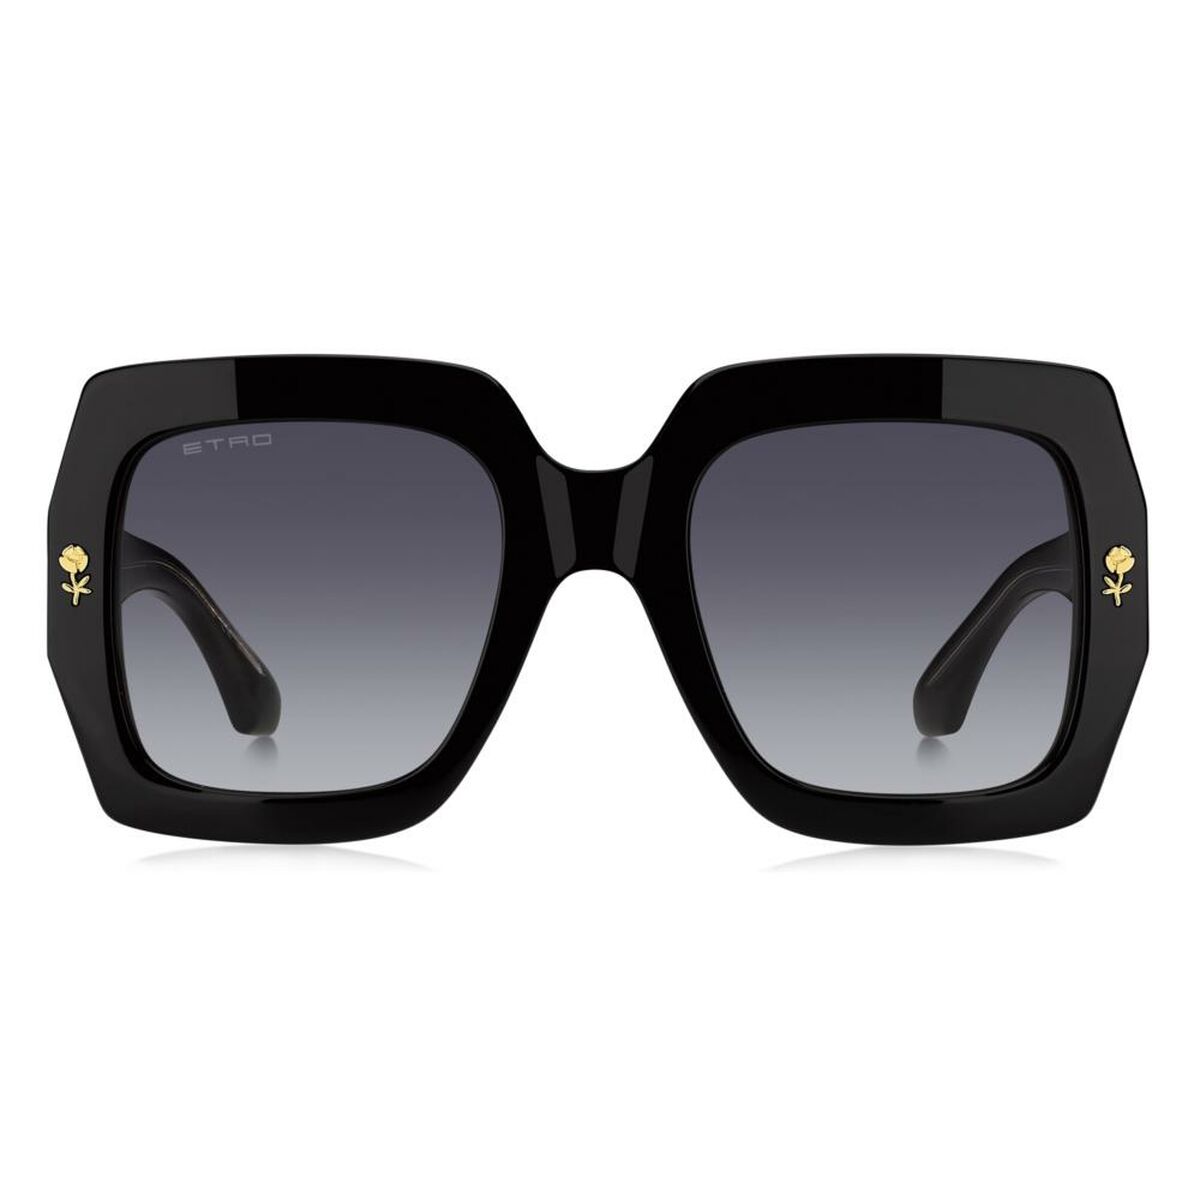 Kaufe Damensonnenbrille Etro ETRO 0011_S bei AWK Flagship um € 233.00